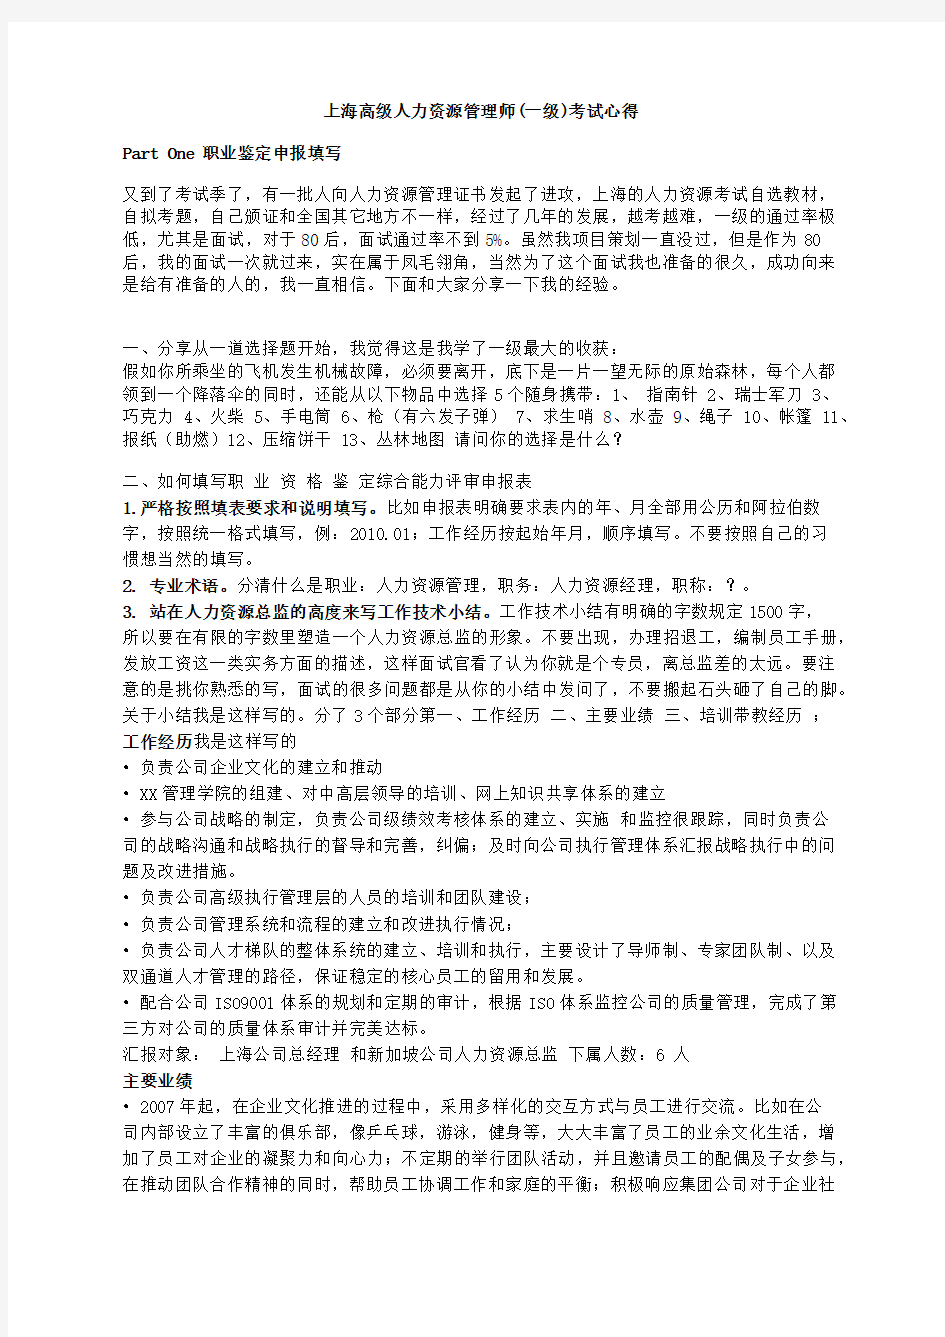 上海高级人力资源管理师(一级)考试心得